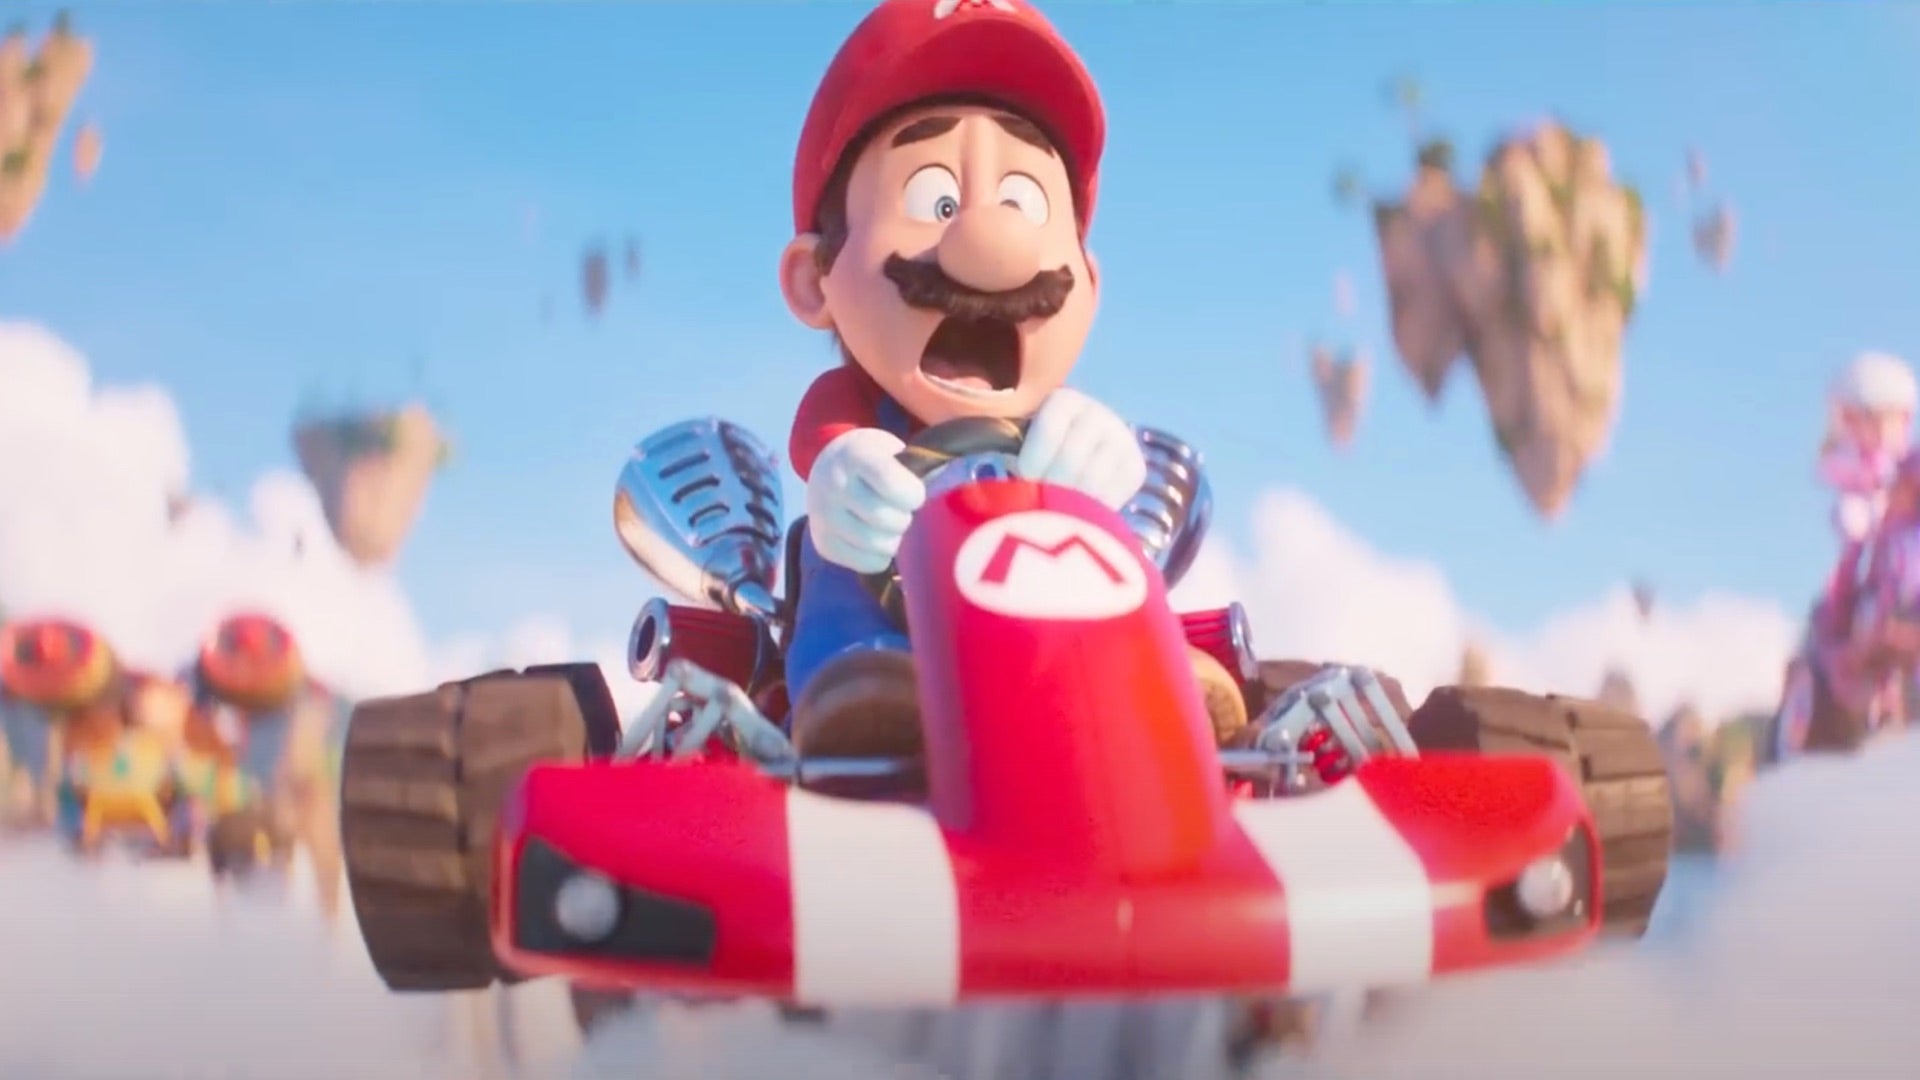 La nouvelle bande-annonce du film Mario fait ses débuts avec Peach, Donkey Kong et une glorieuse route arc-en-ciel